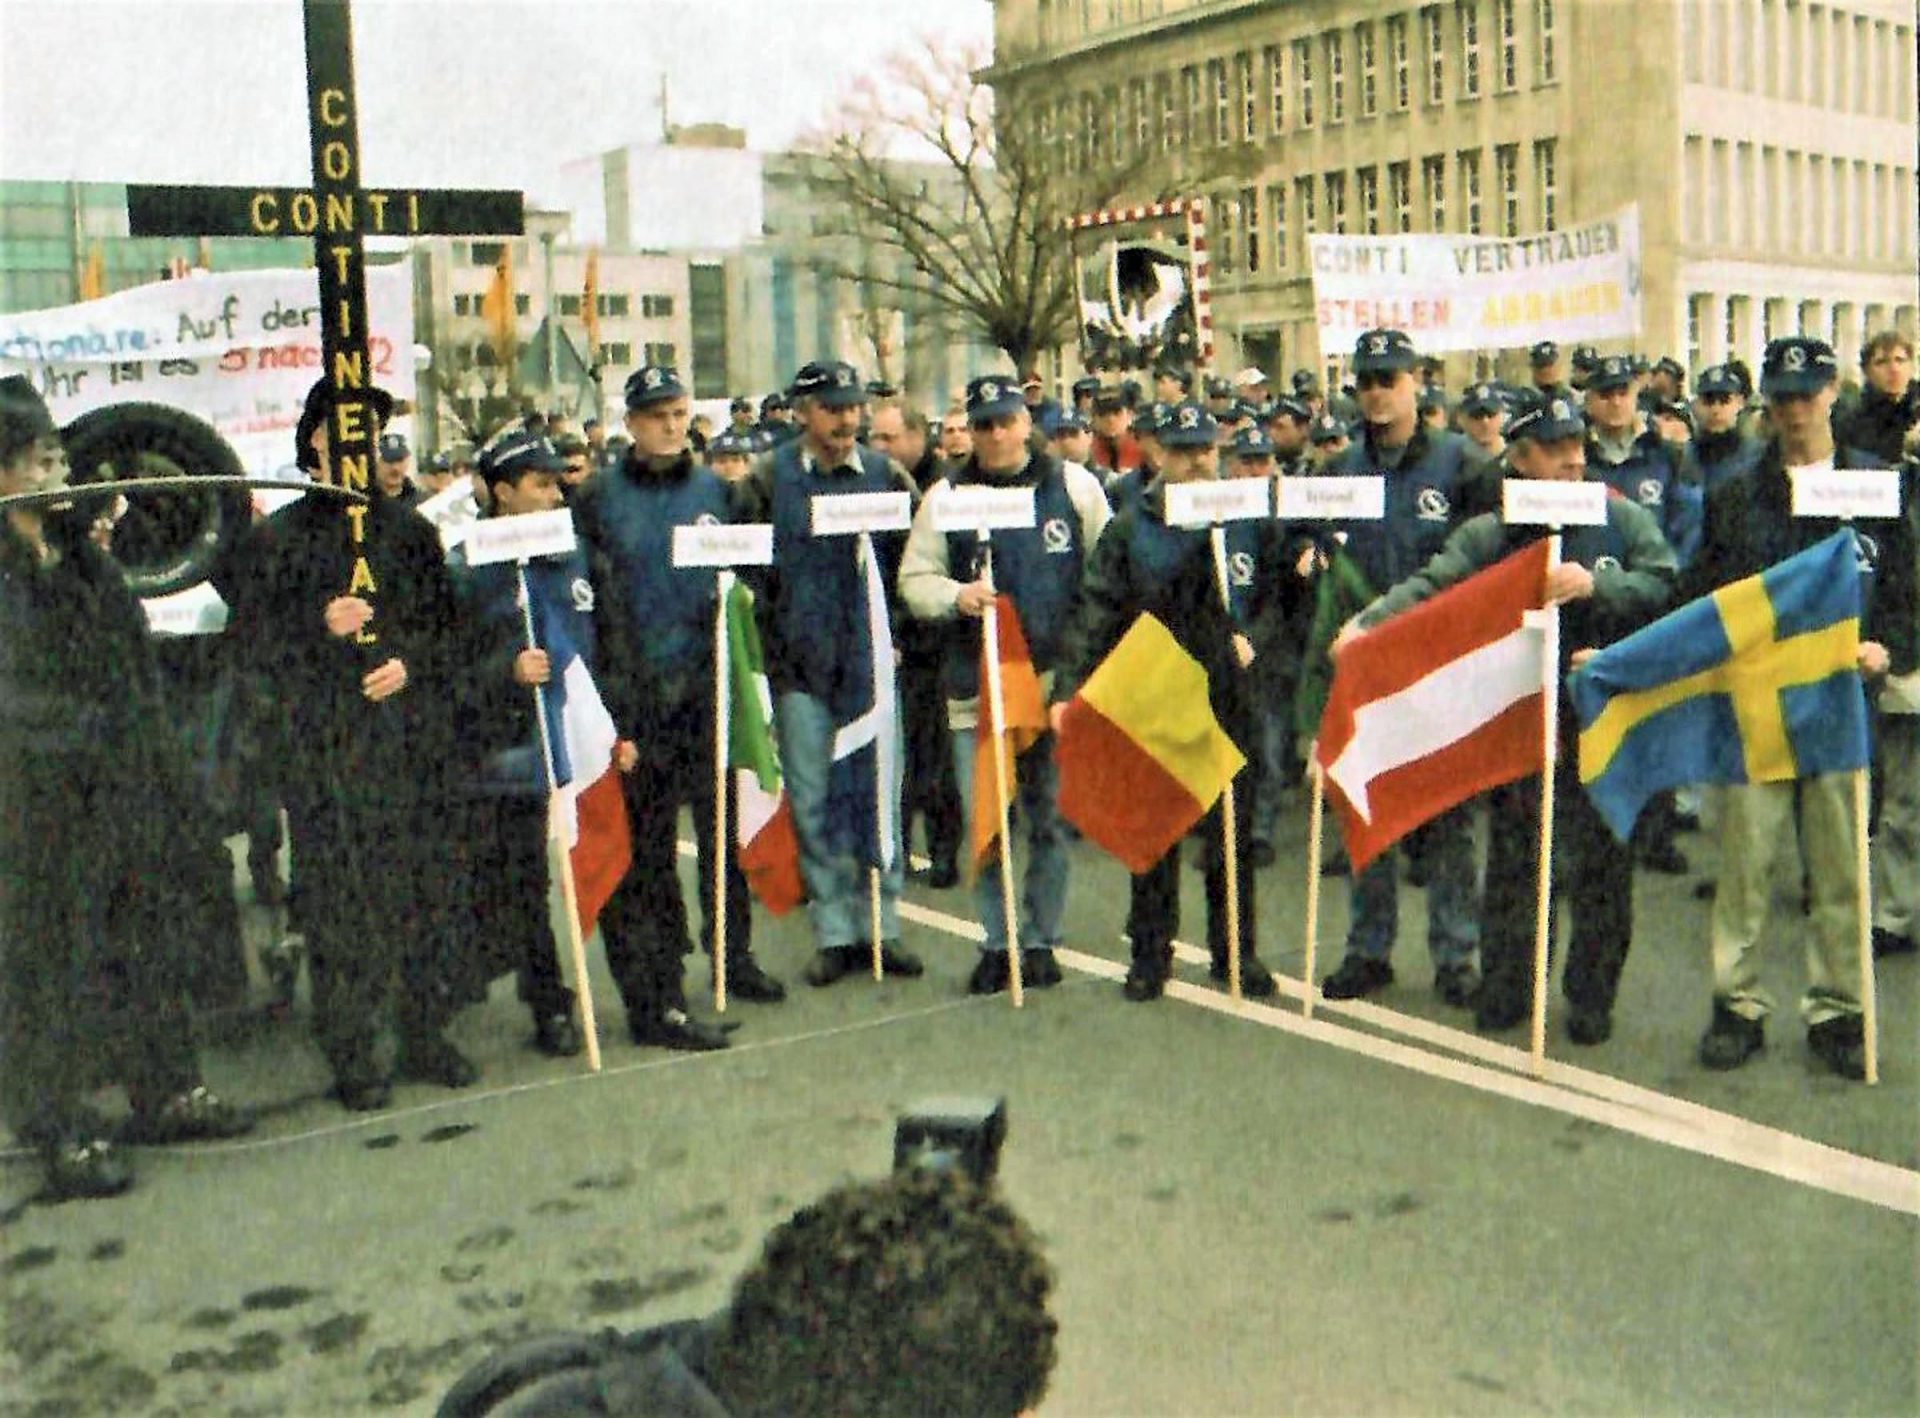 Protestaktion vor der Continental-Zentrale in Hannover 2002